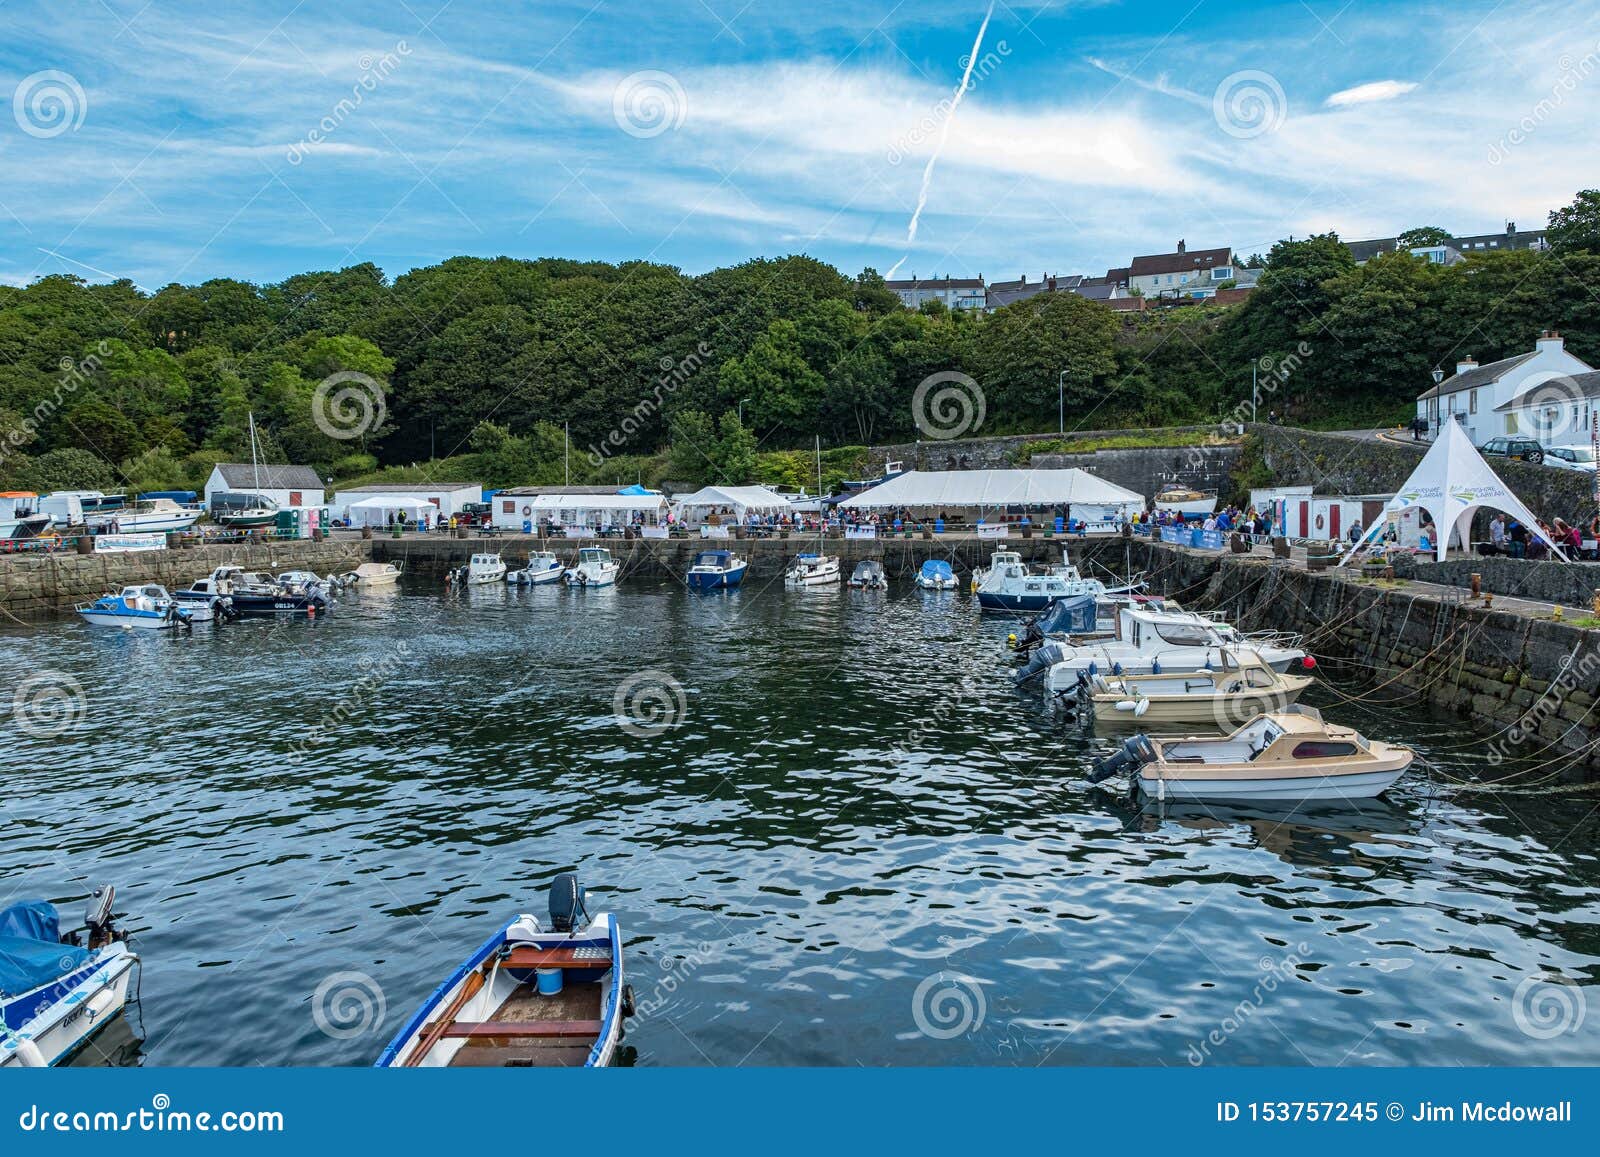 Dunure在苏格兰外国人摄制地点有海营业日的节日和繁忙与许多访客对这普遍编辑类图片 图片包括有dunure在苏格兰外国人摄制地点有海营业日的节日和繁忙与许多访客对这普遍